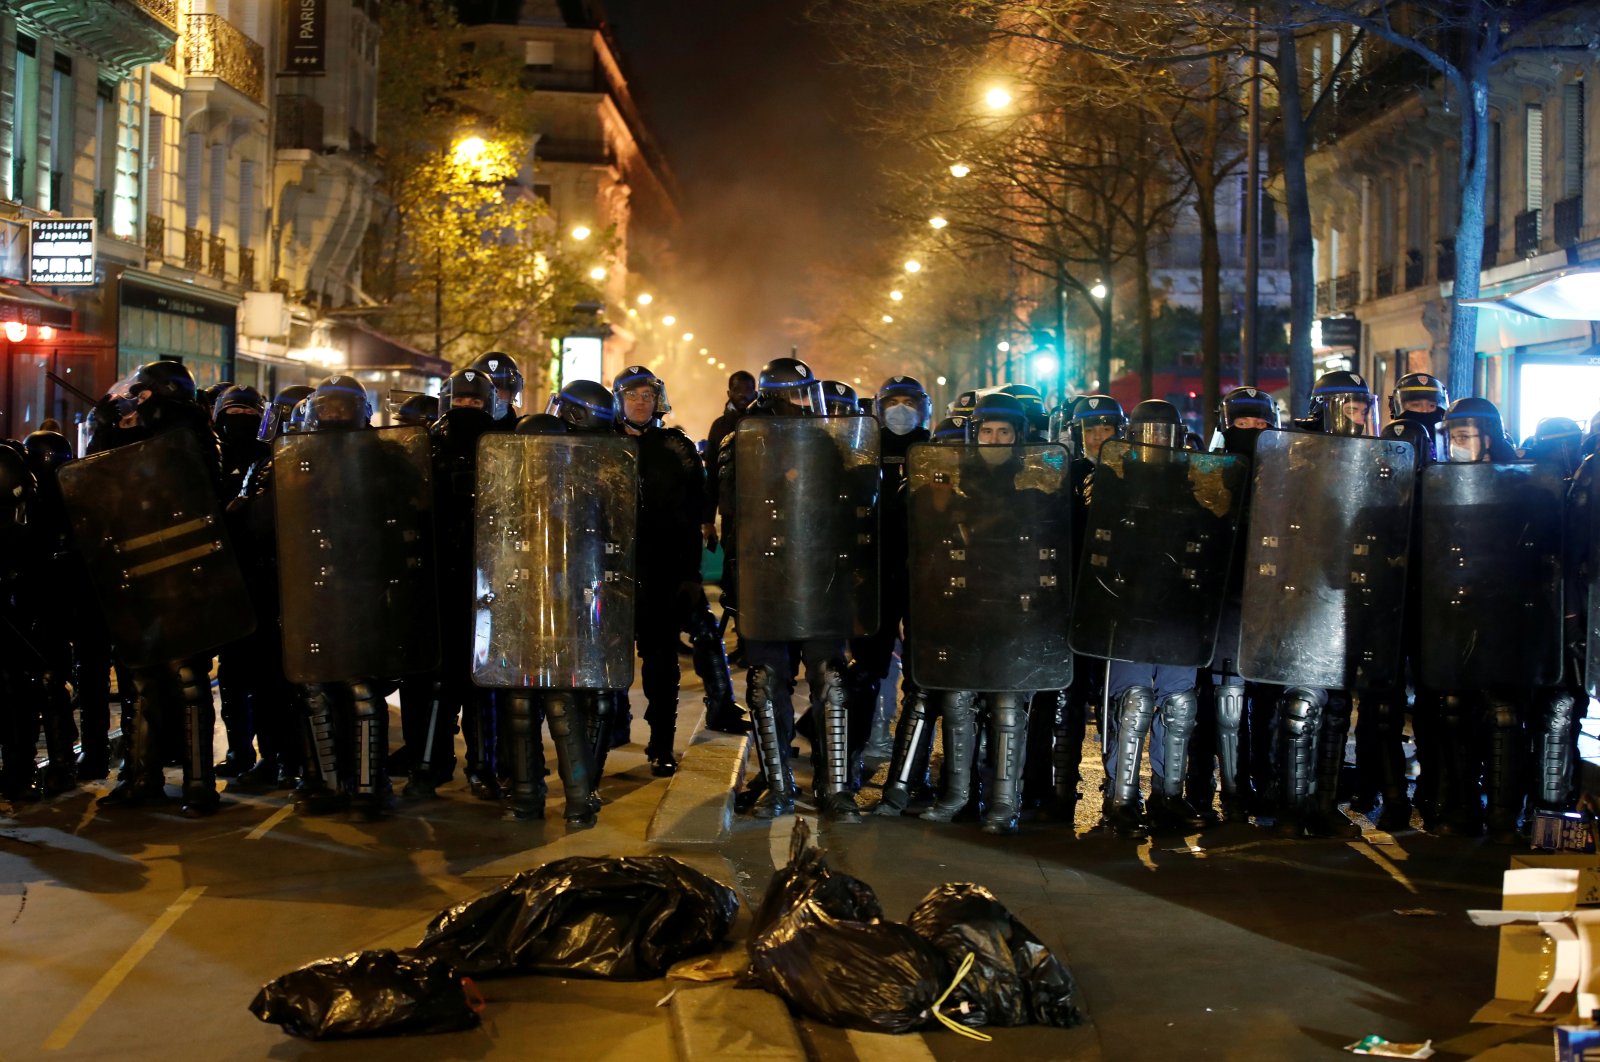 Compagnies Republicaines de Securite (CRS) riot police form a line during protests, Paris, France, Nov. 24, 2020. (Reuters Photo)